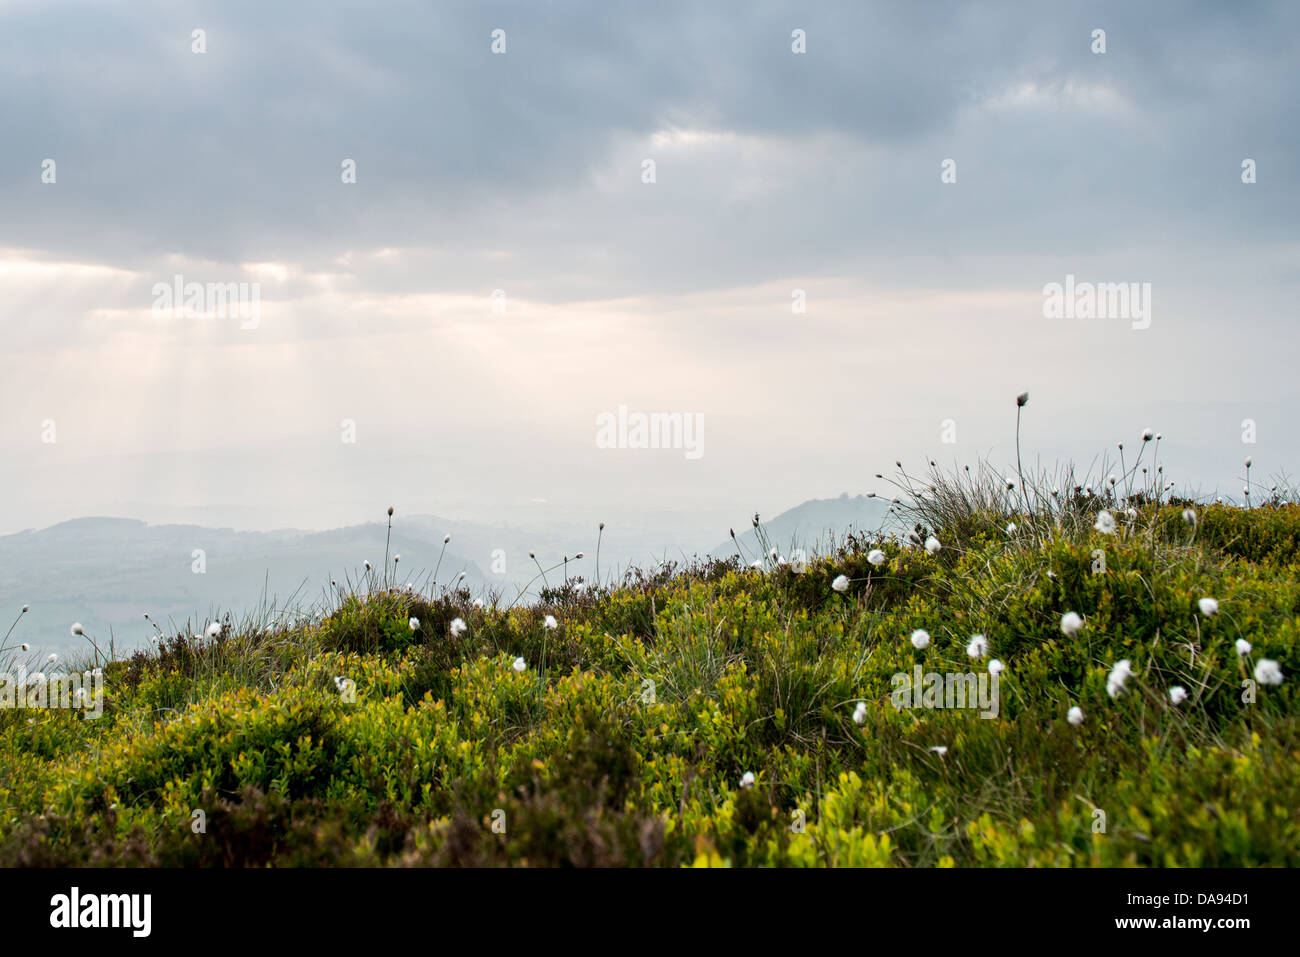 cotton grass on a mountain Stock Photo